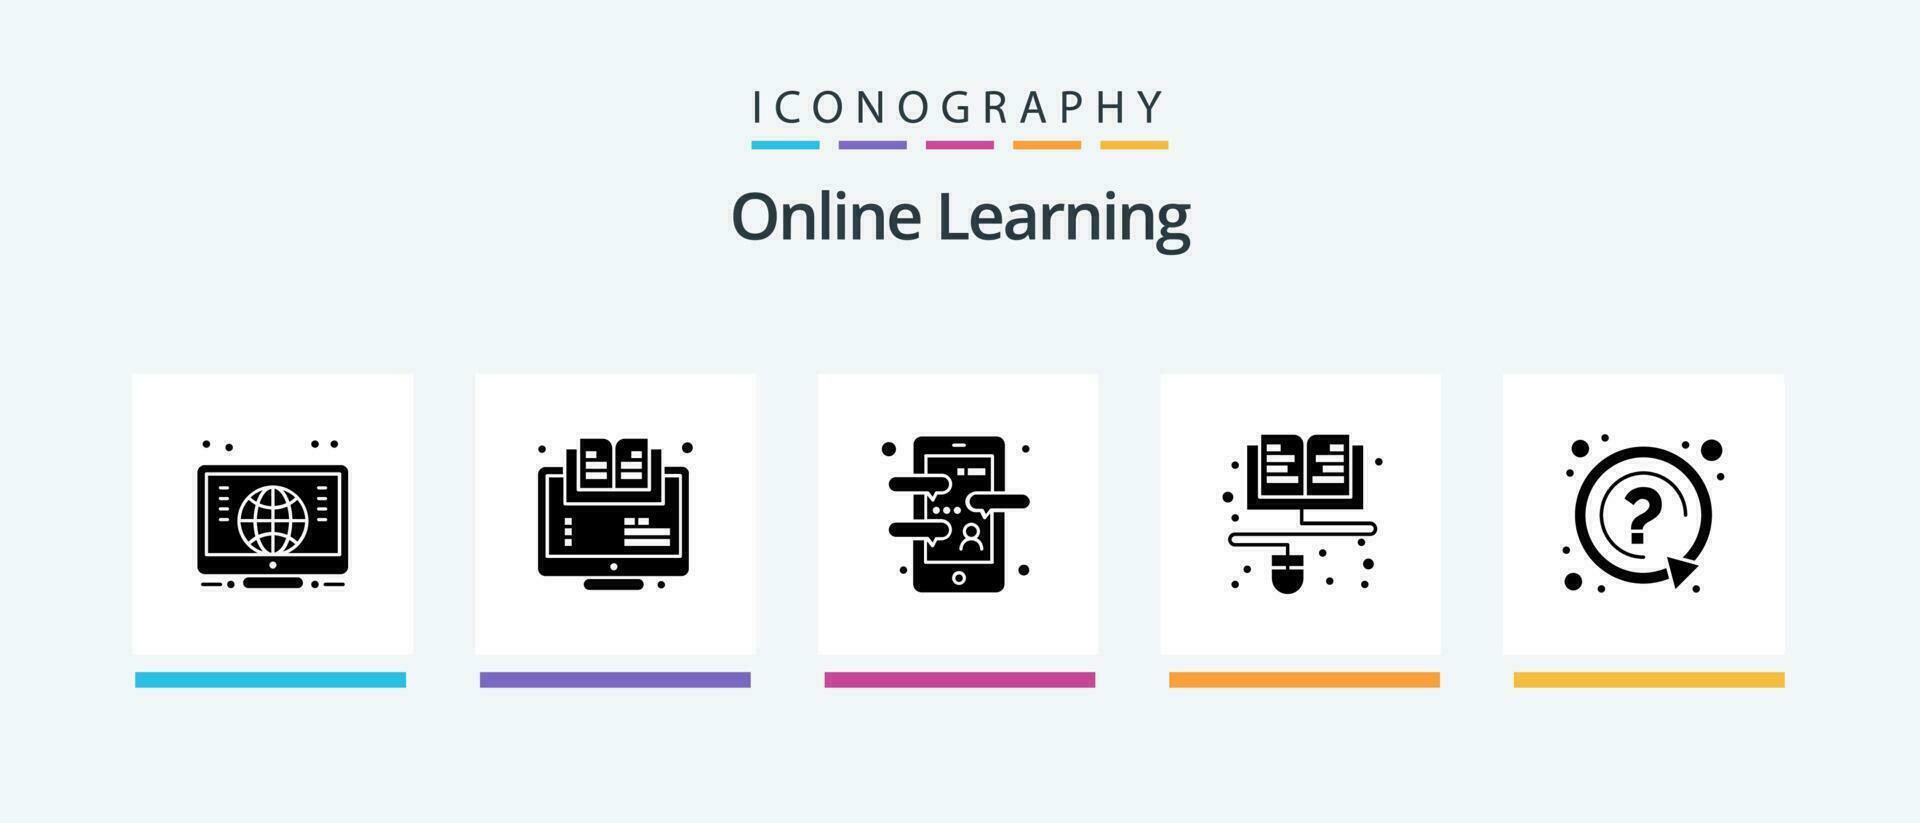 en línea aprendizaje glifo 5 5 icono paquete incluso preguntar. aprendiendo. aplicación educación. idioma aplicación creativo íconos diseño vector